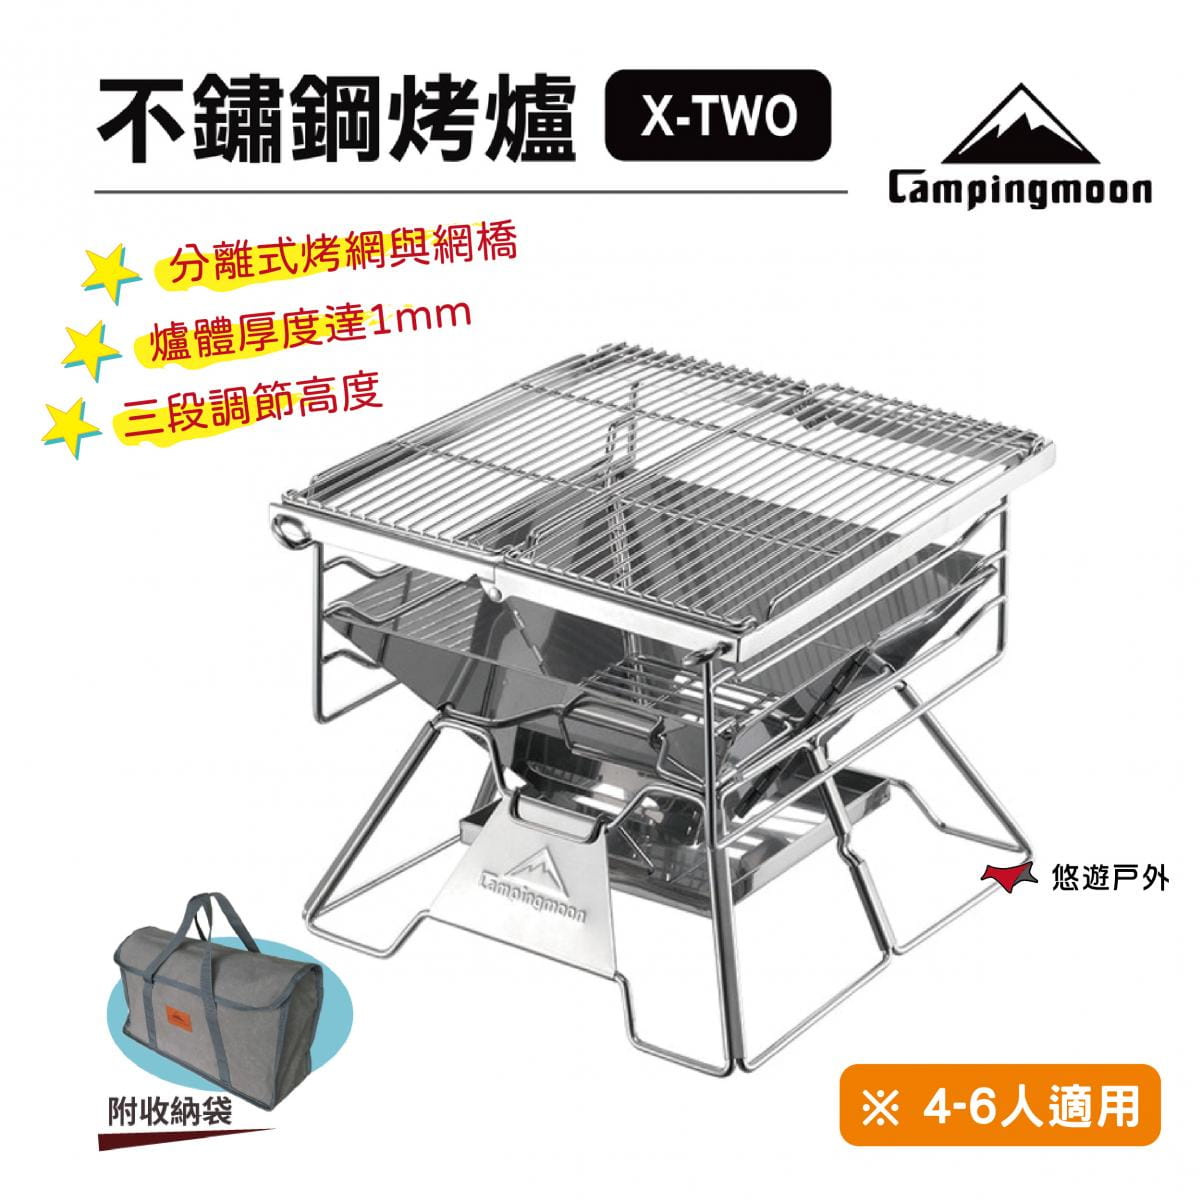 【柯曼】極厚超級烤爐(X-TWO) 304不鏽鋼  悠遊戶外 0